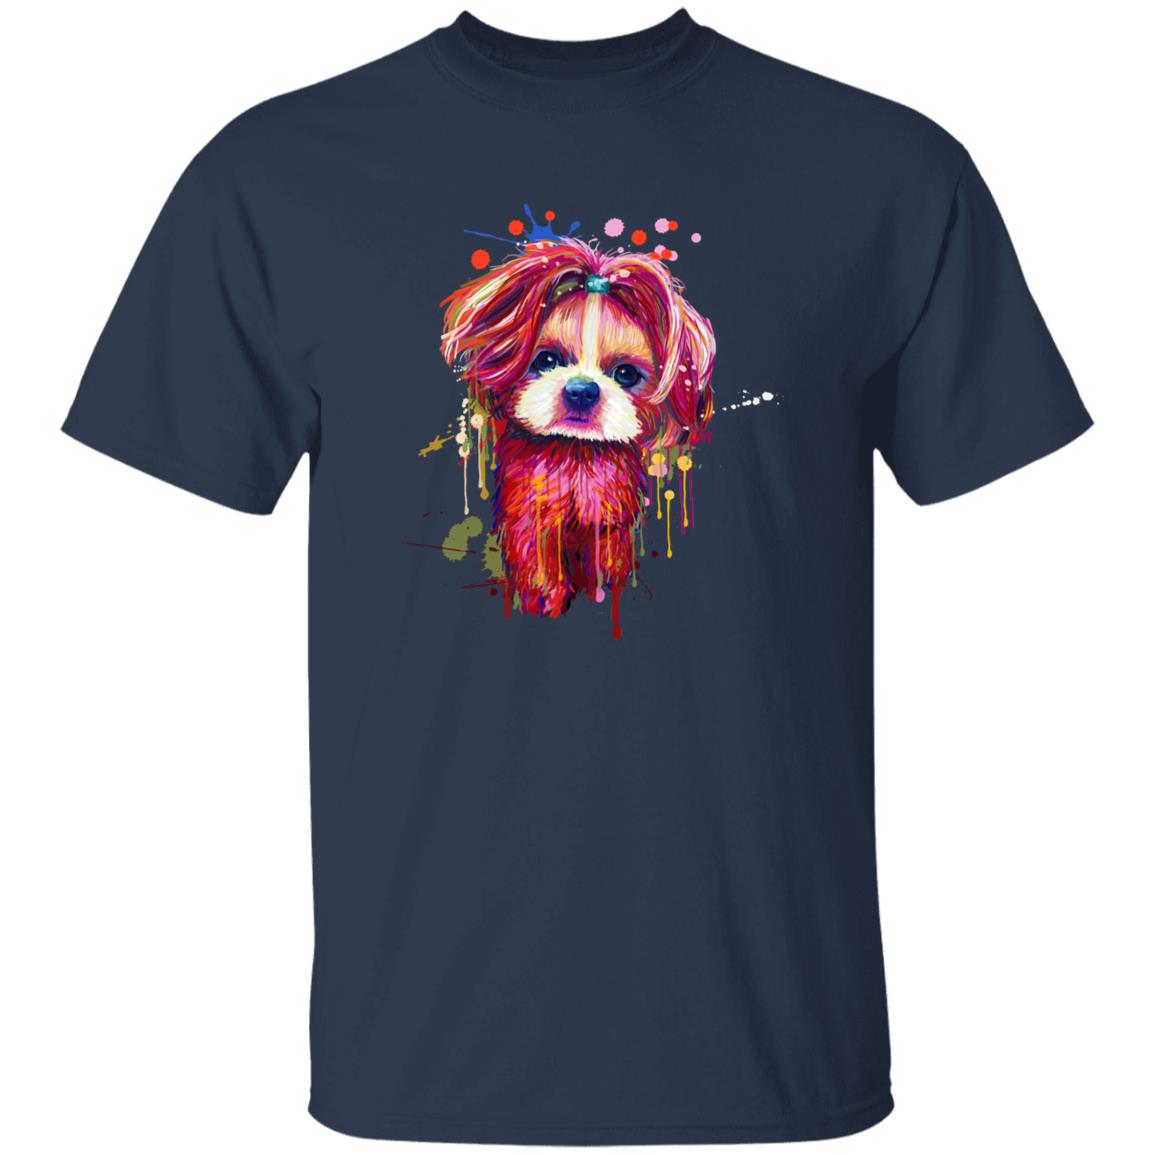 Digital Art Shih Tzu dog Unisex shirt S-2XL black navy dark heather-Navy-Family-Gift-Planet